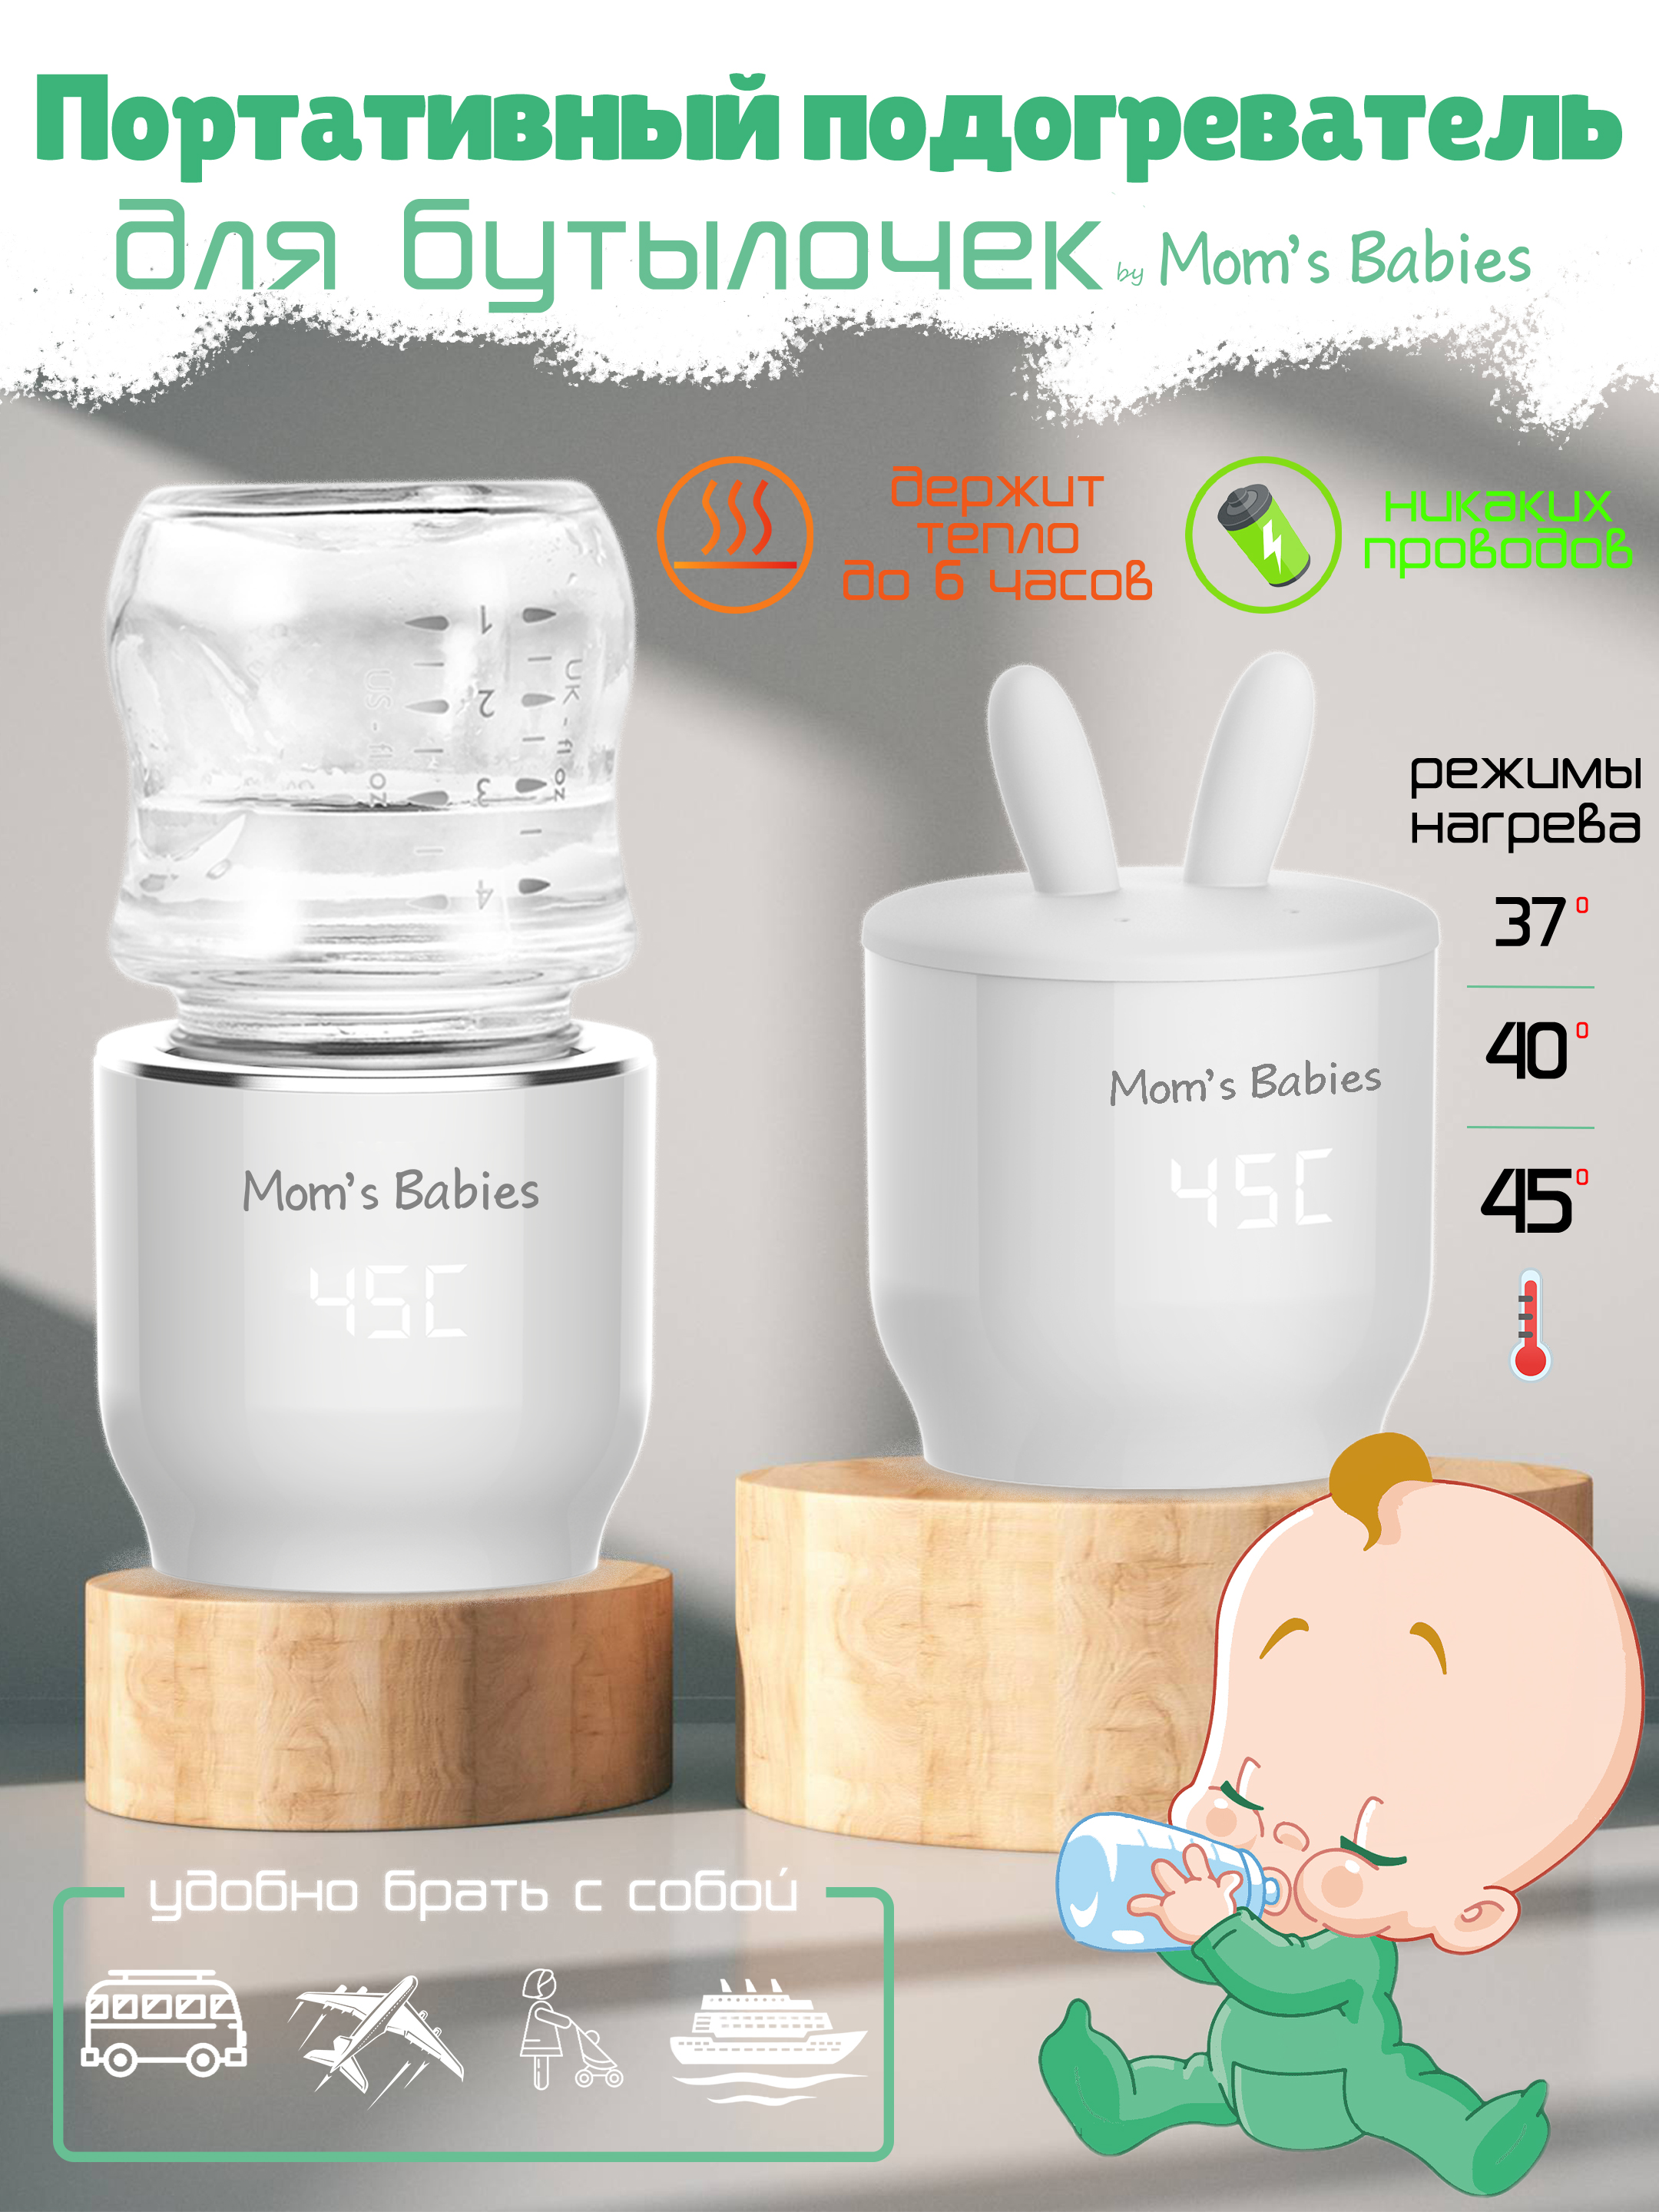 Портативный подогреватель Mom's Babies FS01 для бутылочек и детского питания белый